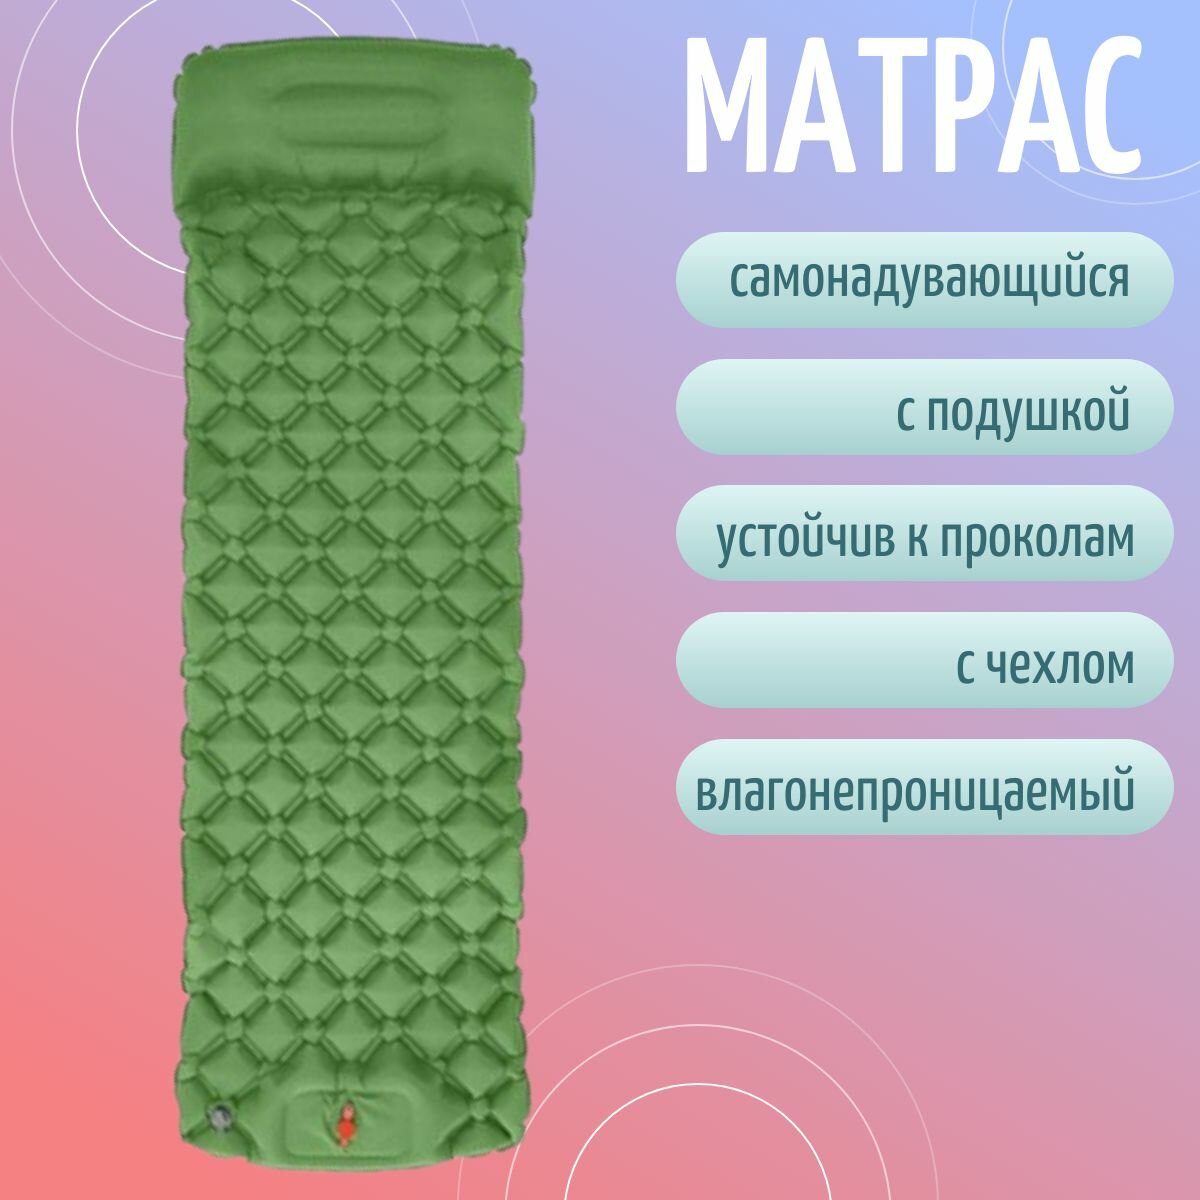 Коврик матрас надувной туристический 190х60 см с подушкой и чехлом для переноски зеленый